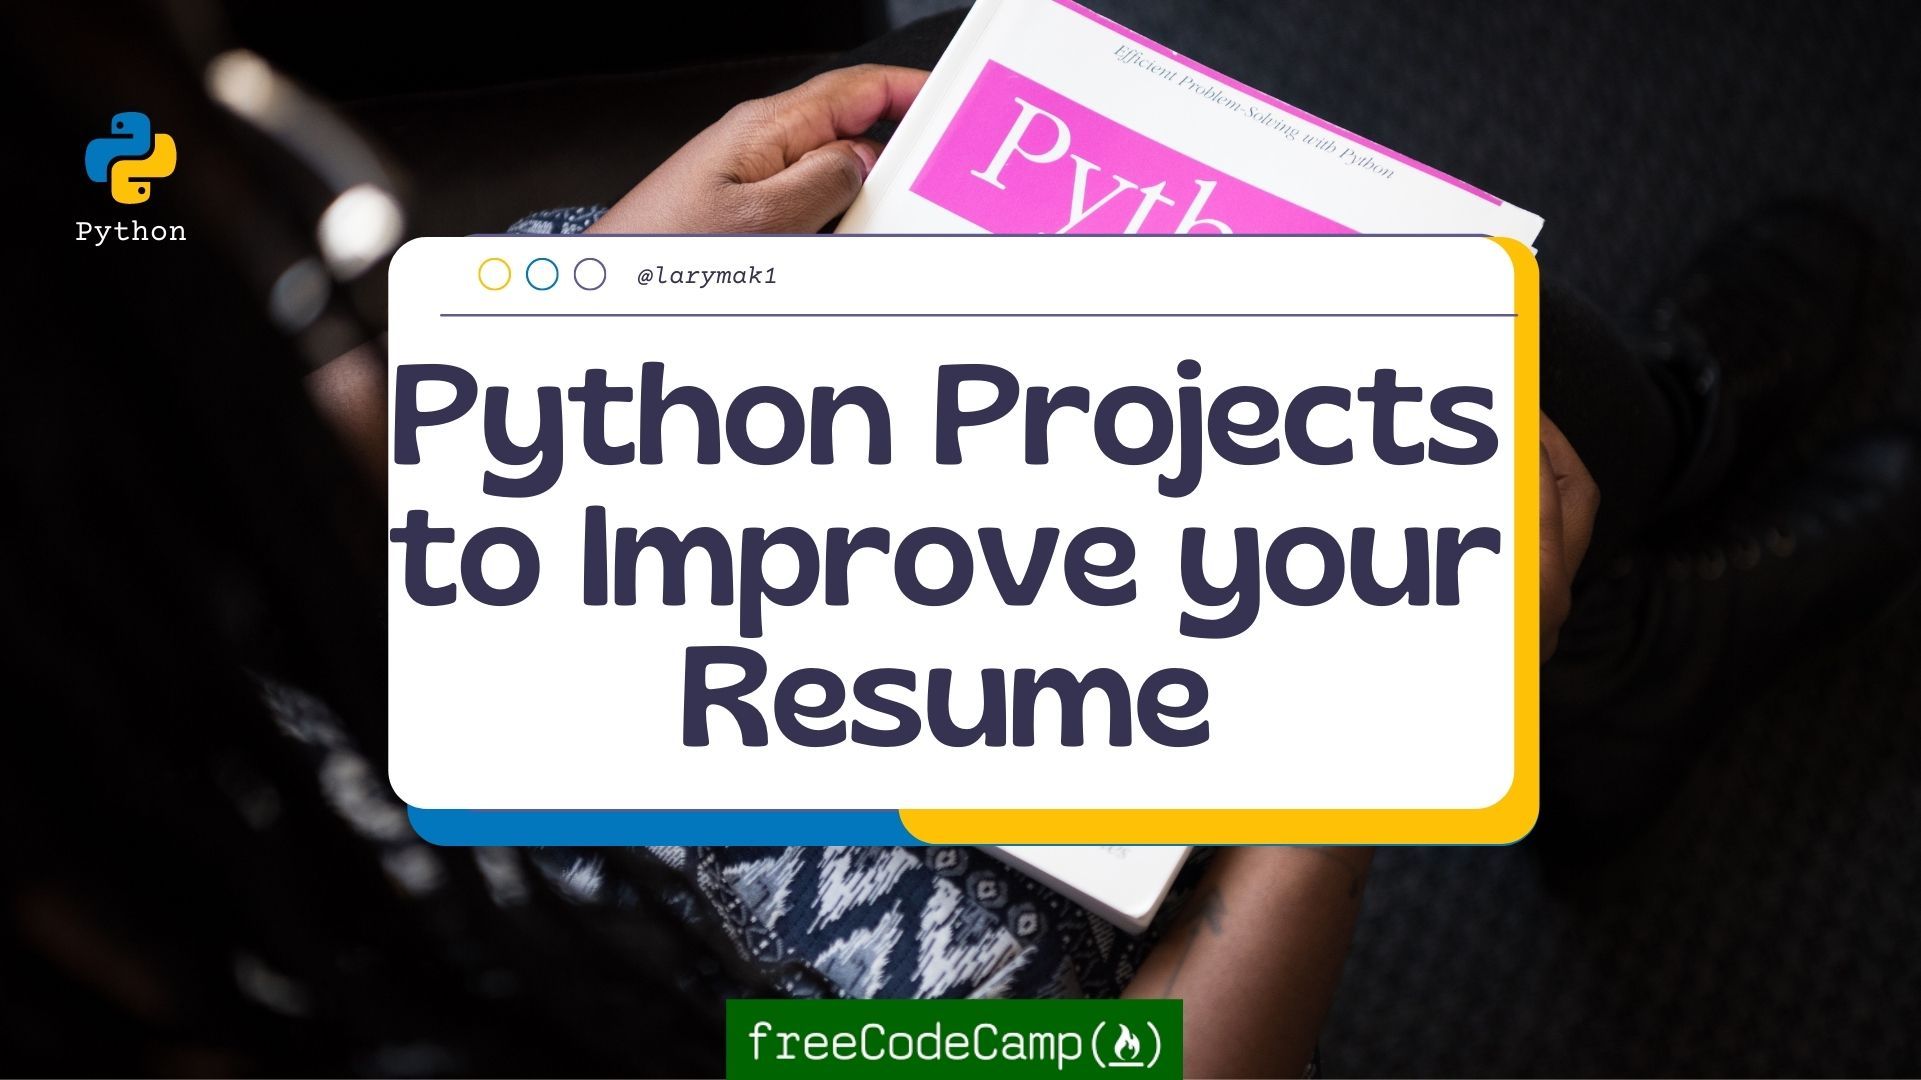 Python Project Ideas to Improve Your Résumé